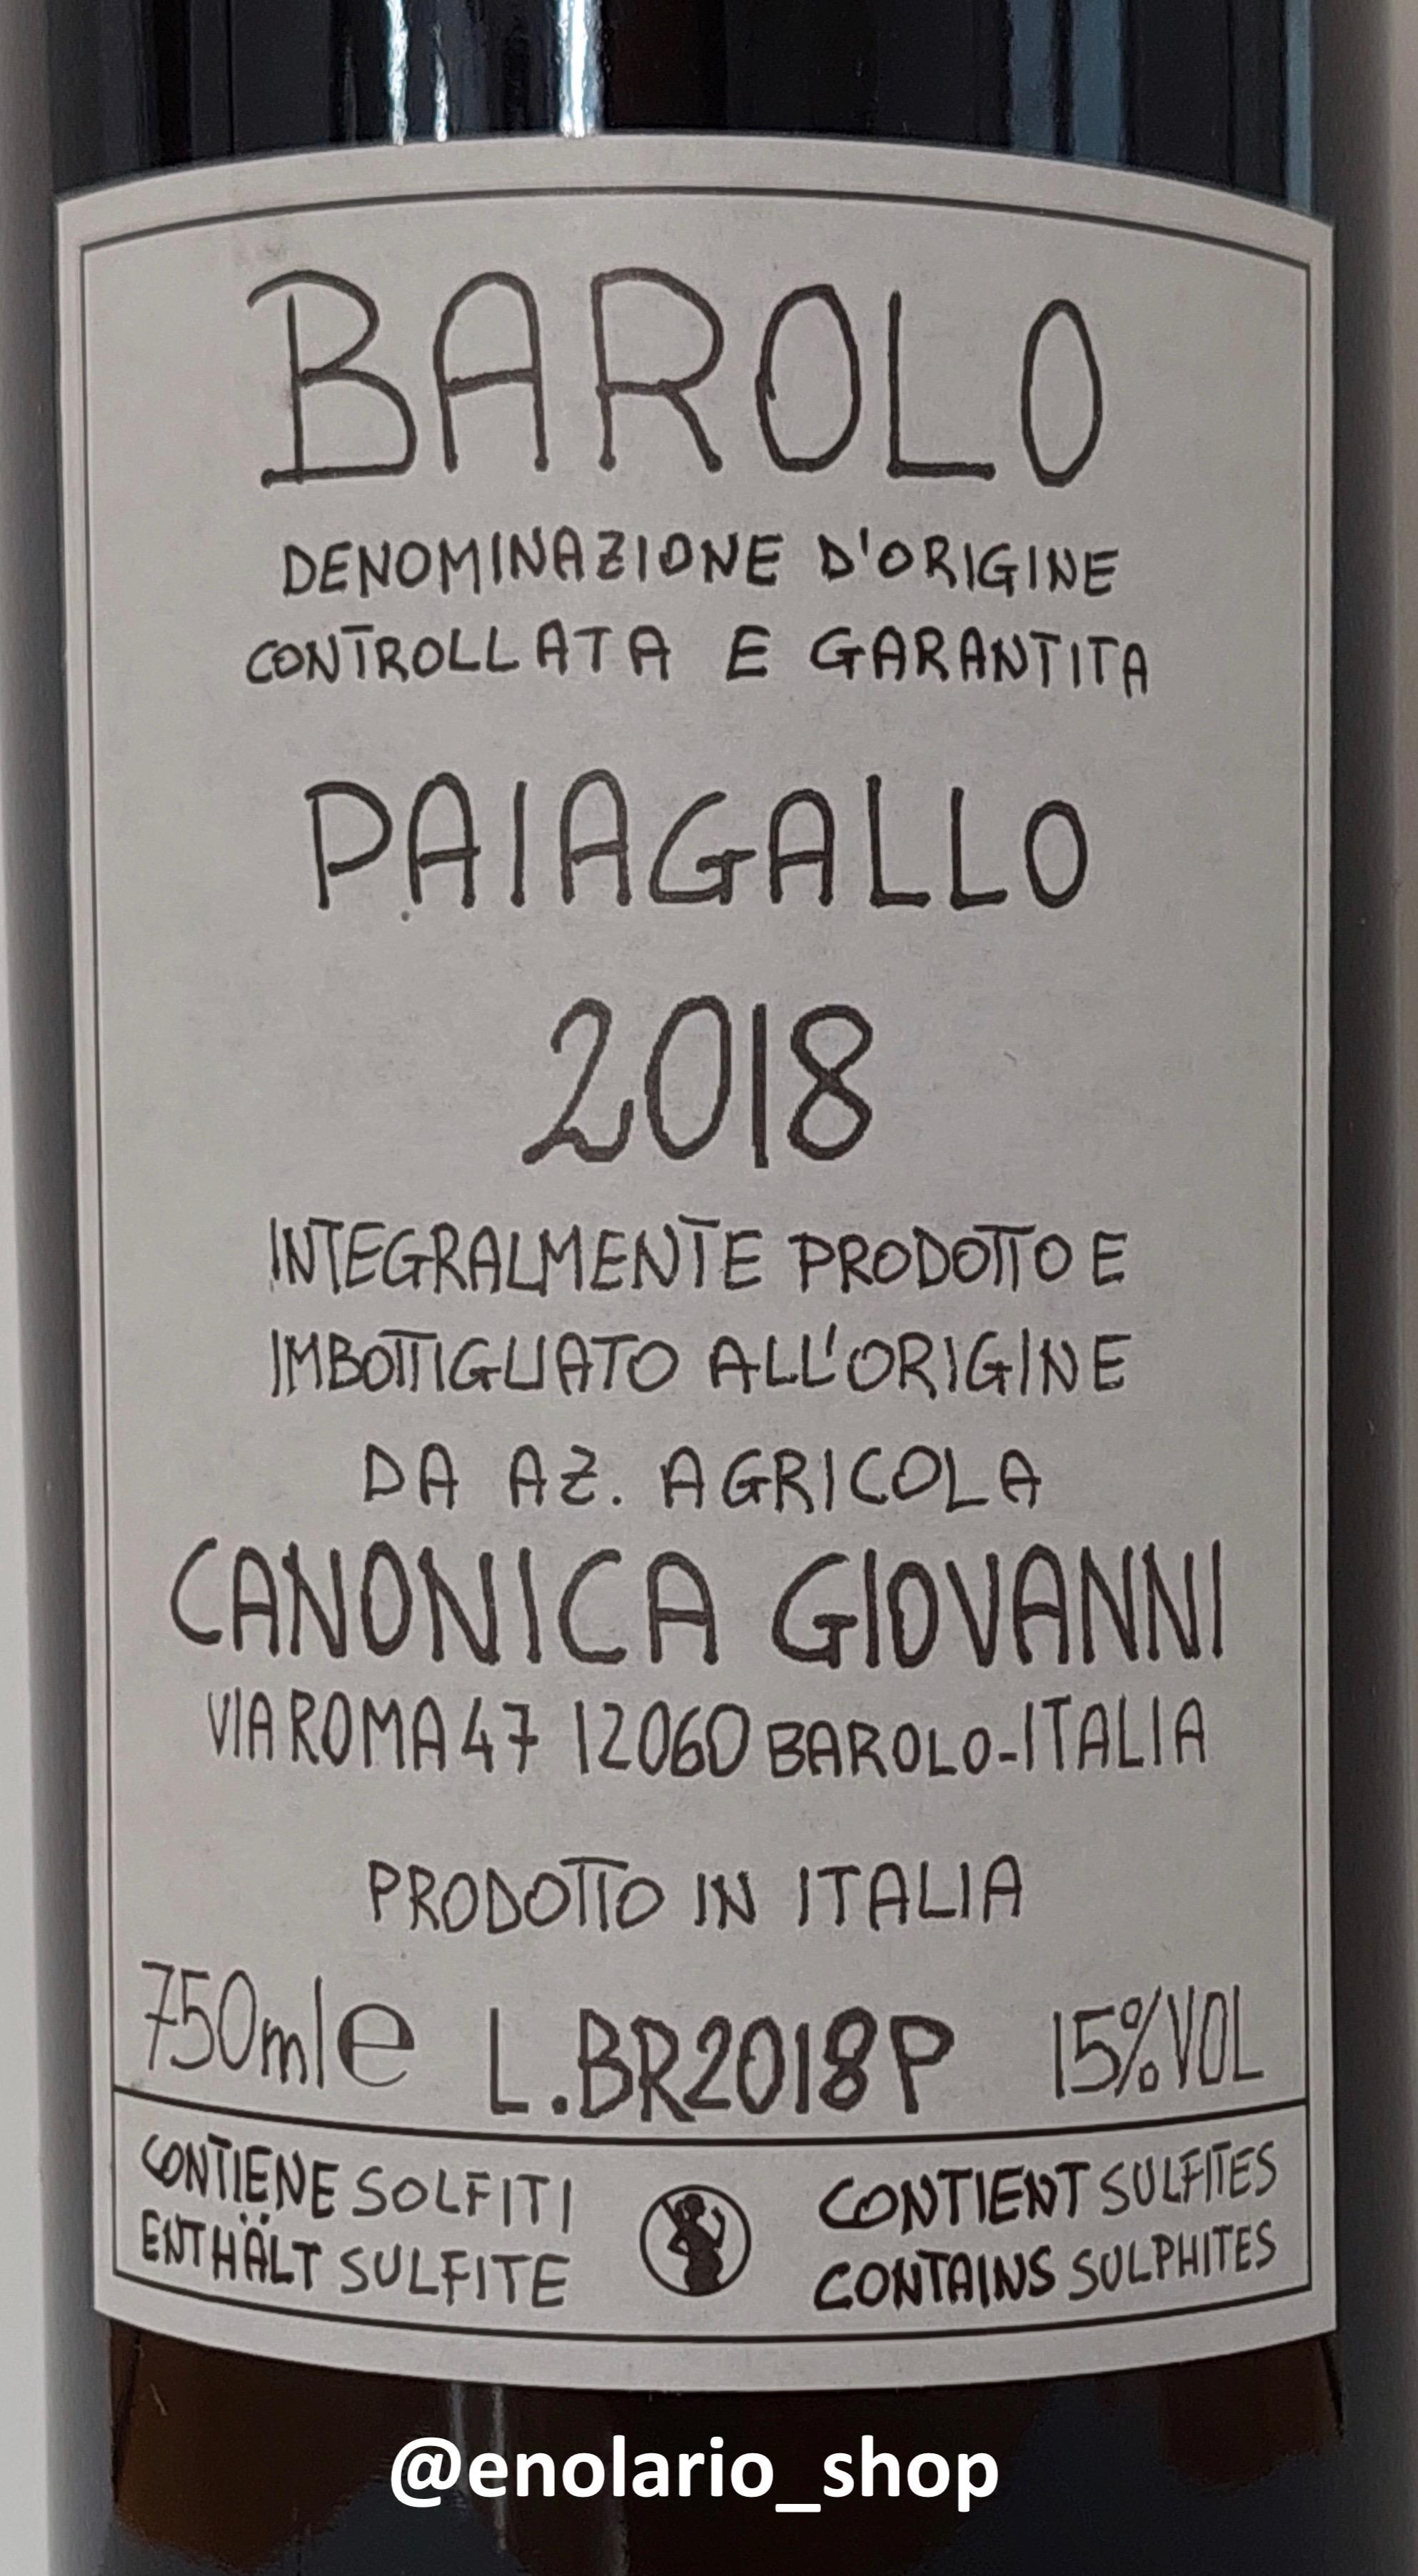 Giovanni Canonica Barolo Paiagallo 2018